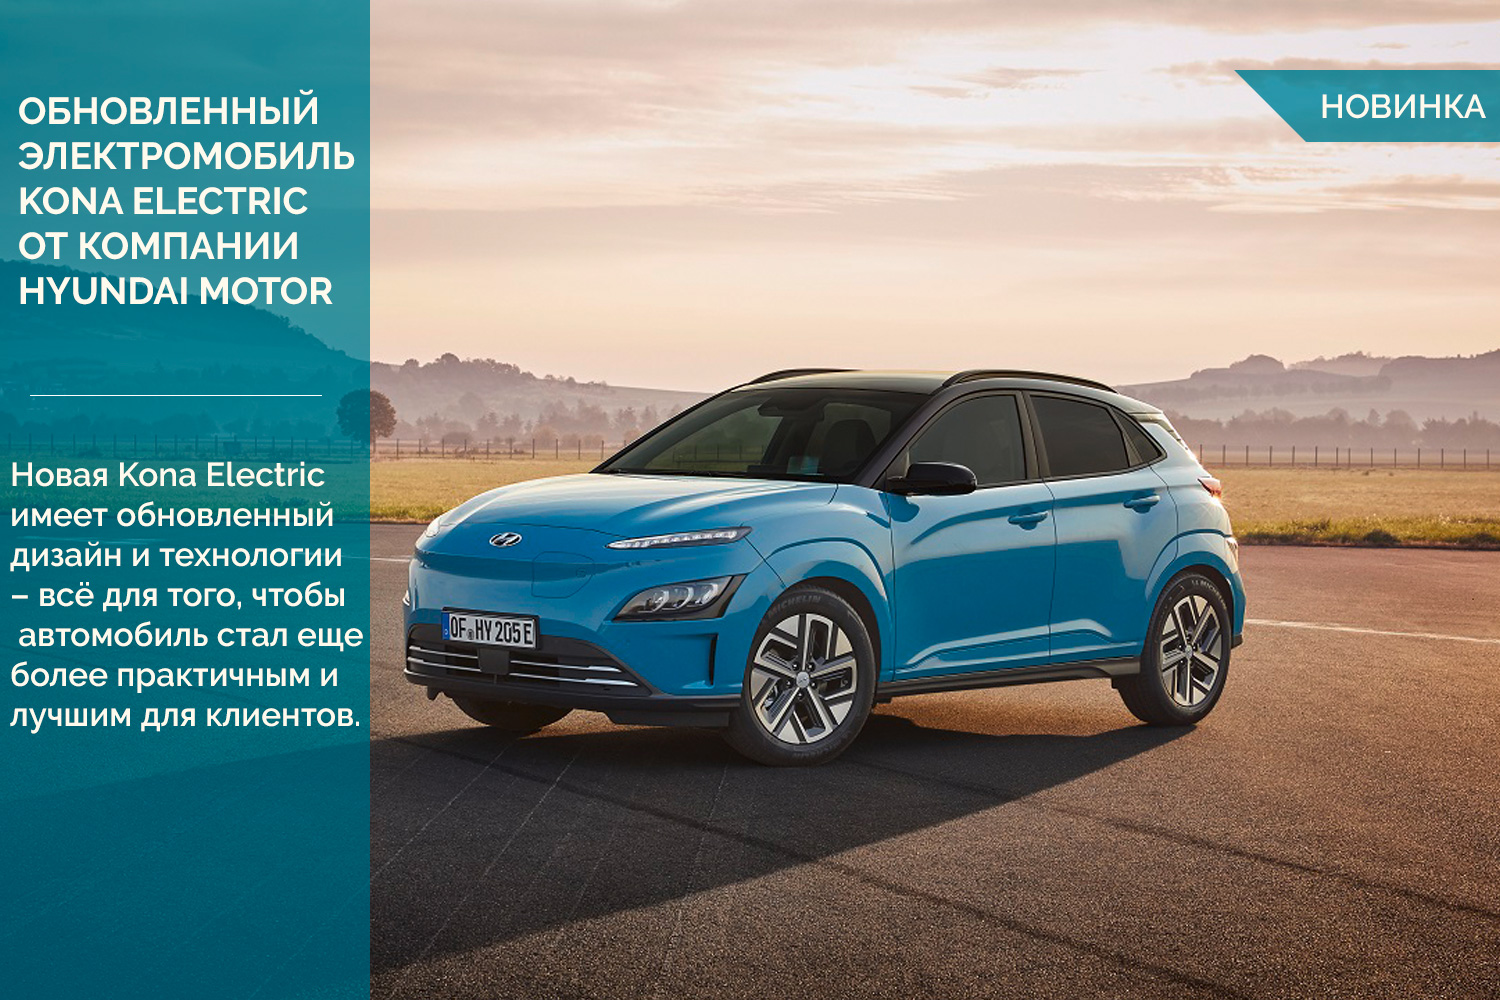 Обновленный все цело электрический субкомпактный внедорожник Kona Electric от компании Hyundai Motor.